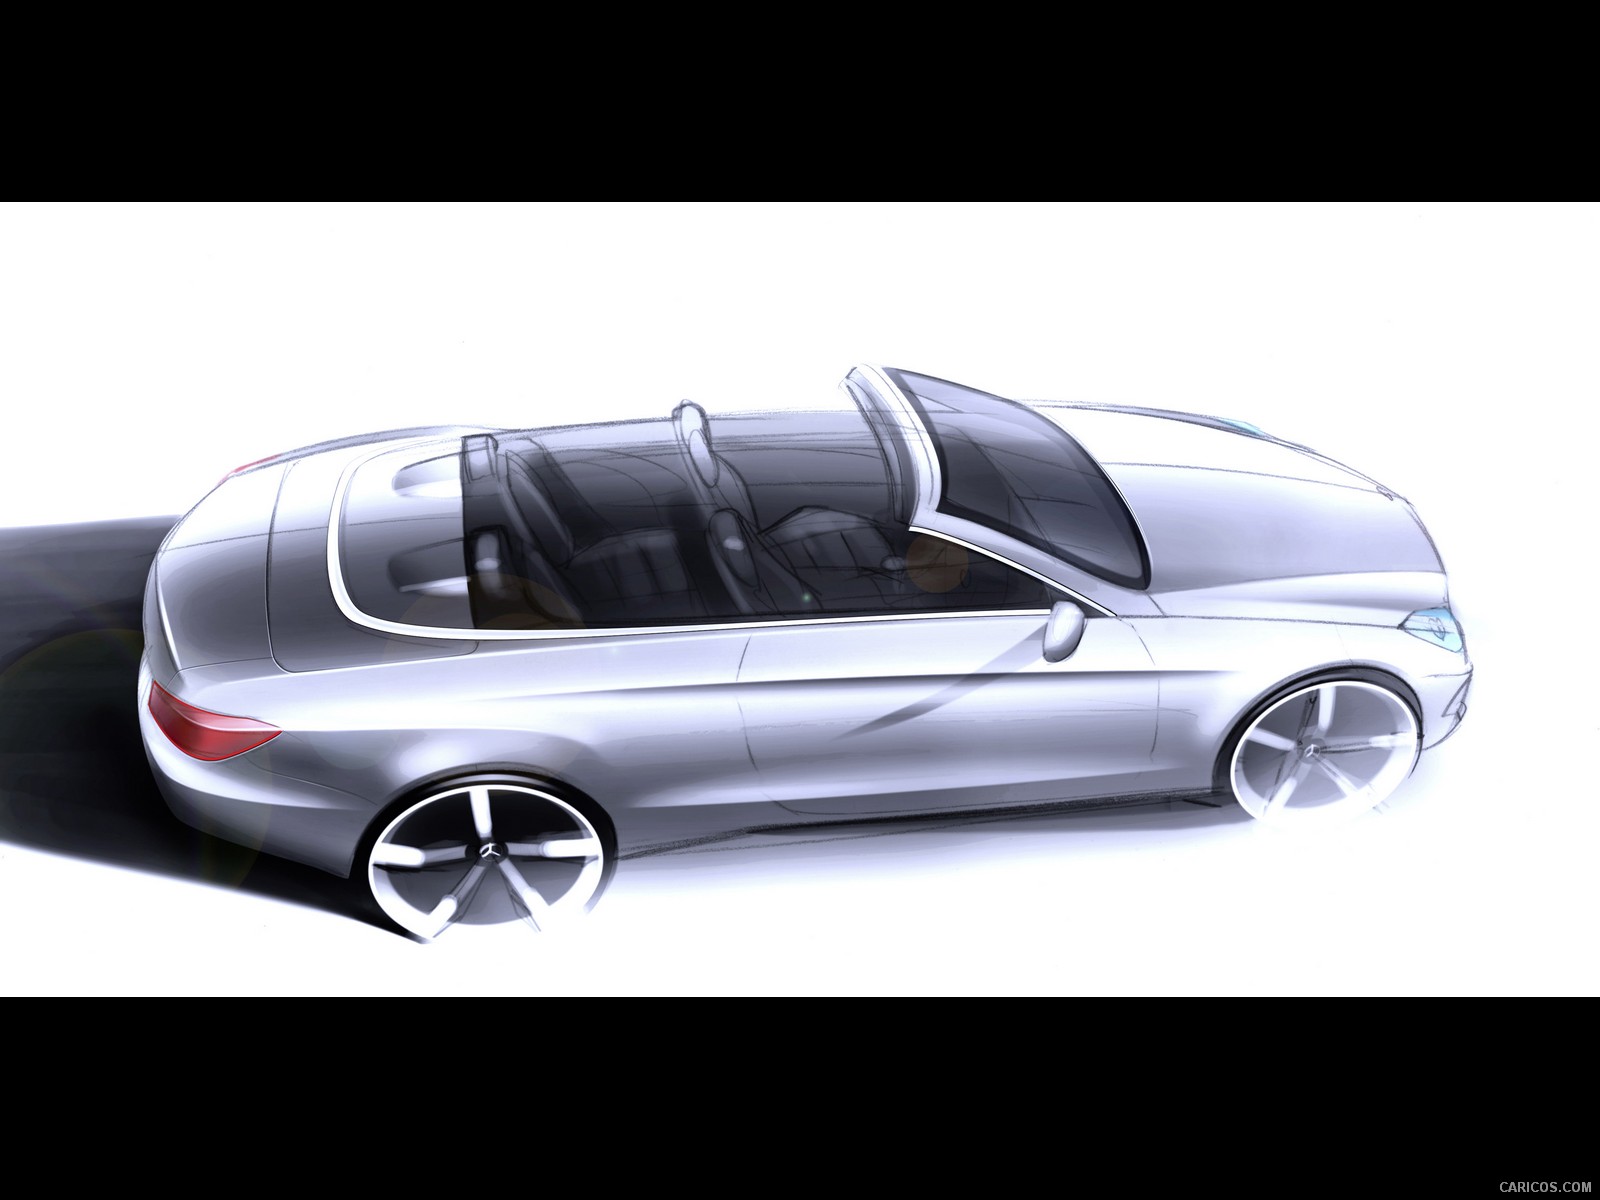 Mercedes-Benz E-Class Cabriolet  - Design Sketch, #111 of 165